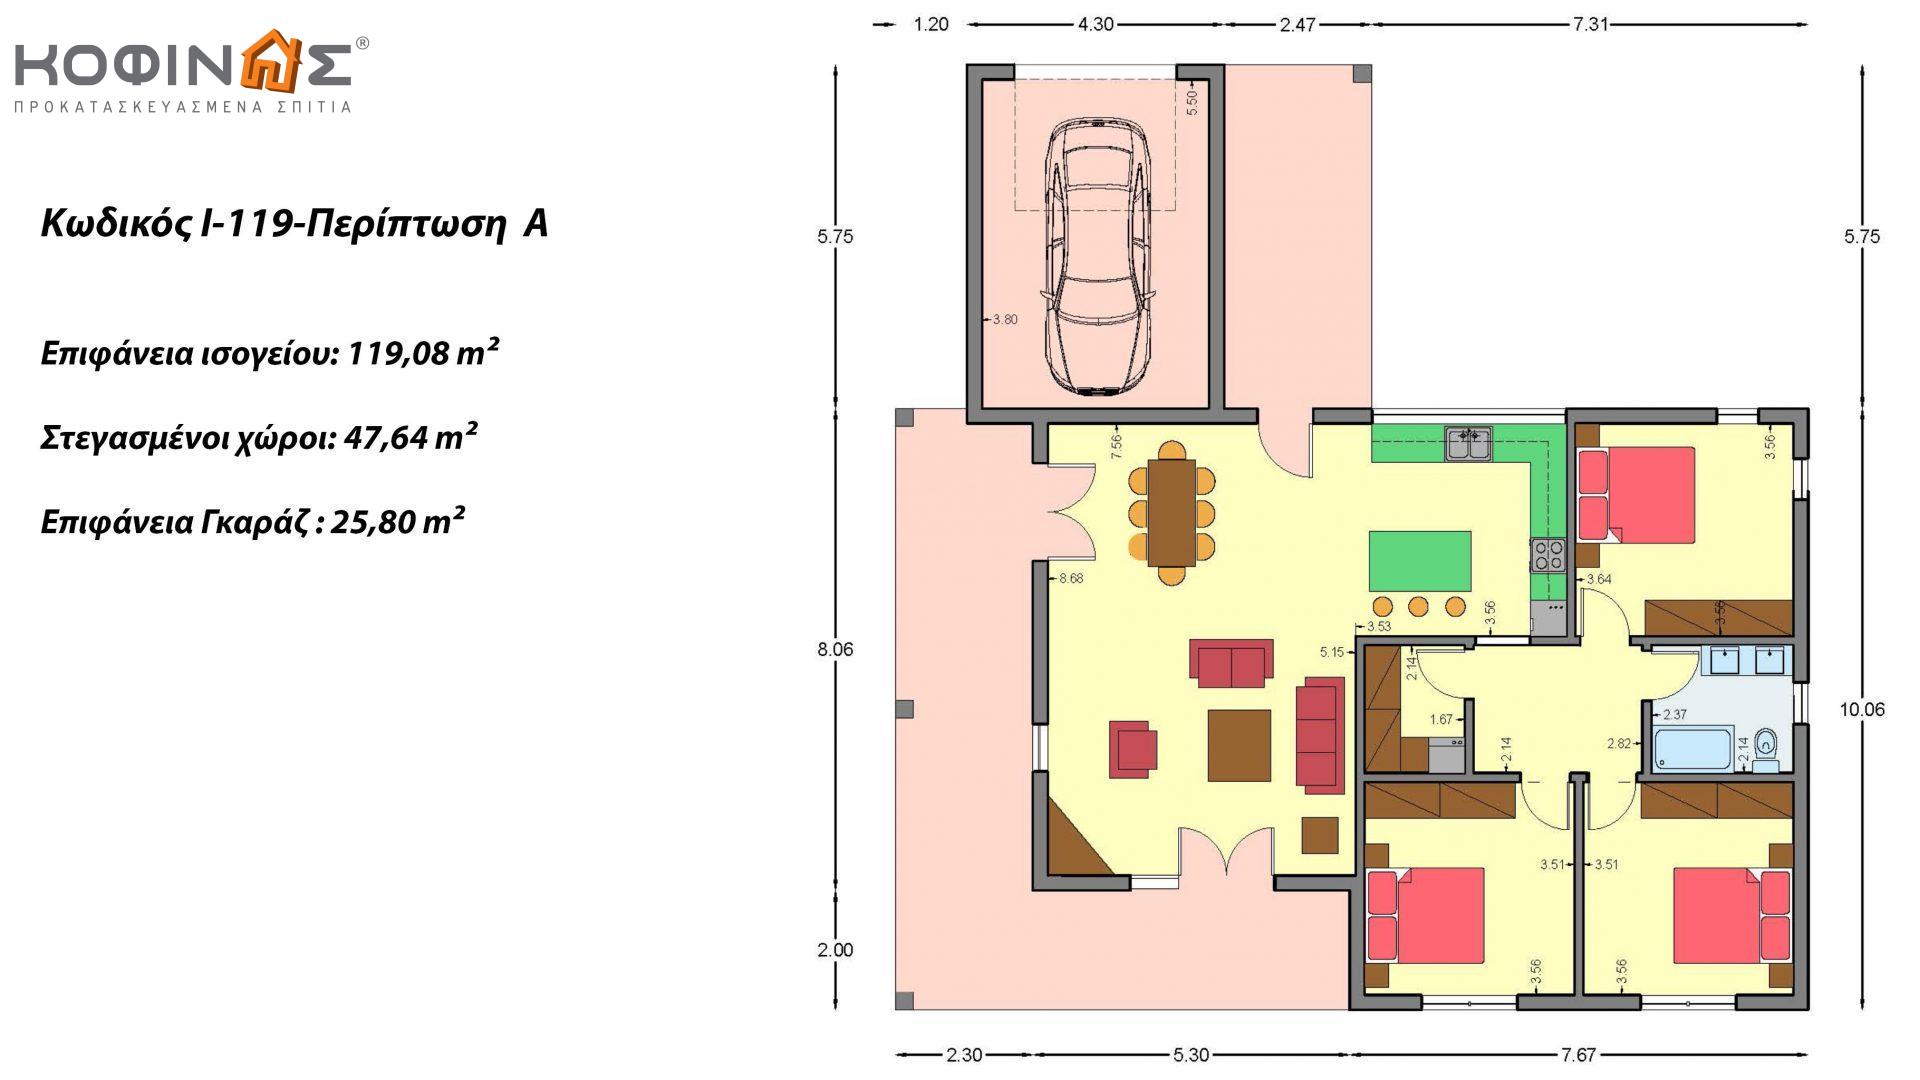 Ισόγεια Κατοικία I-119, συνολικής επιφάνειας 119,08 τ.μ., +Γκαράζ 25.80 m²(=144,88 m²),συνολική επιφάνεια στεγασμένων χώρων 47,64 τ.μ.